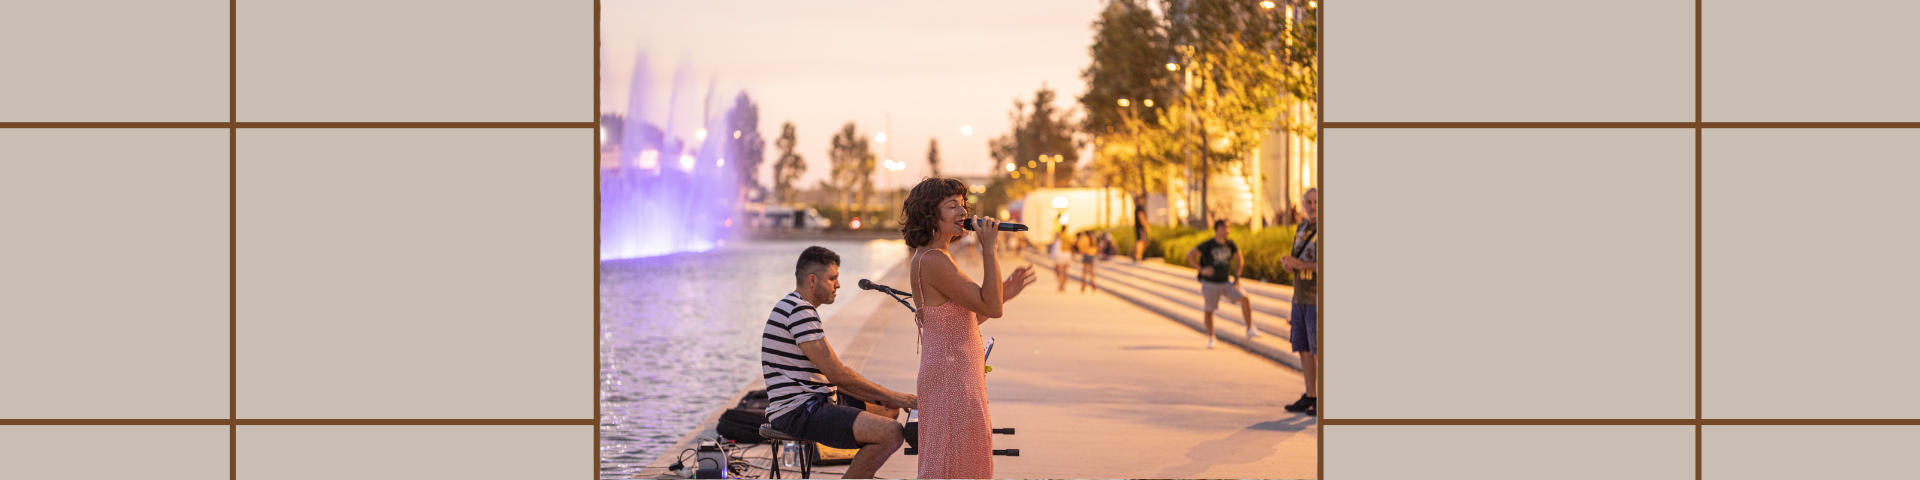 Φωτογραφία με μια γυναίκα που τραγουδάει και έναν άντρα που παίζει μουσική δίπλα στο Κανάλι